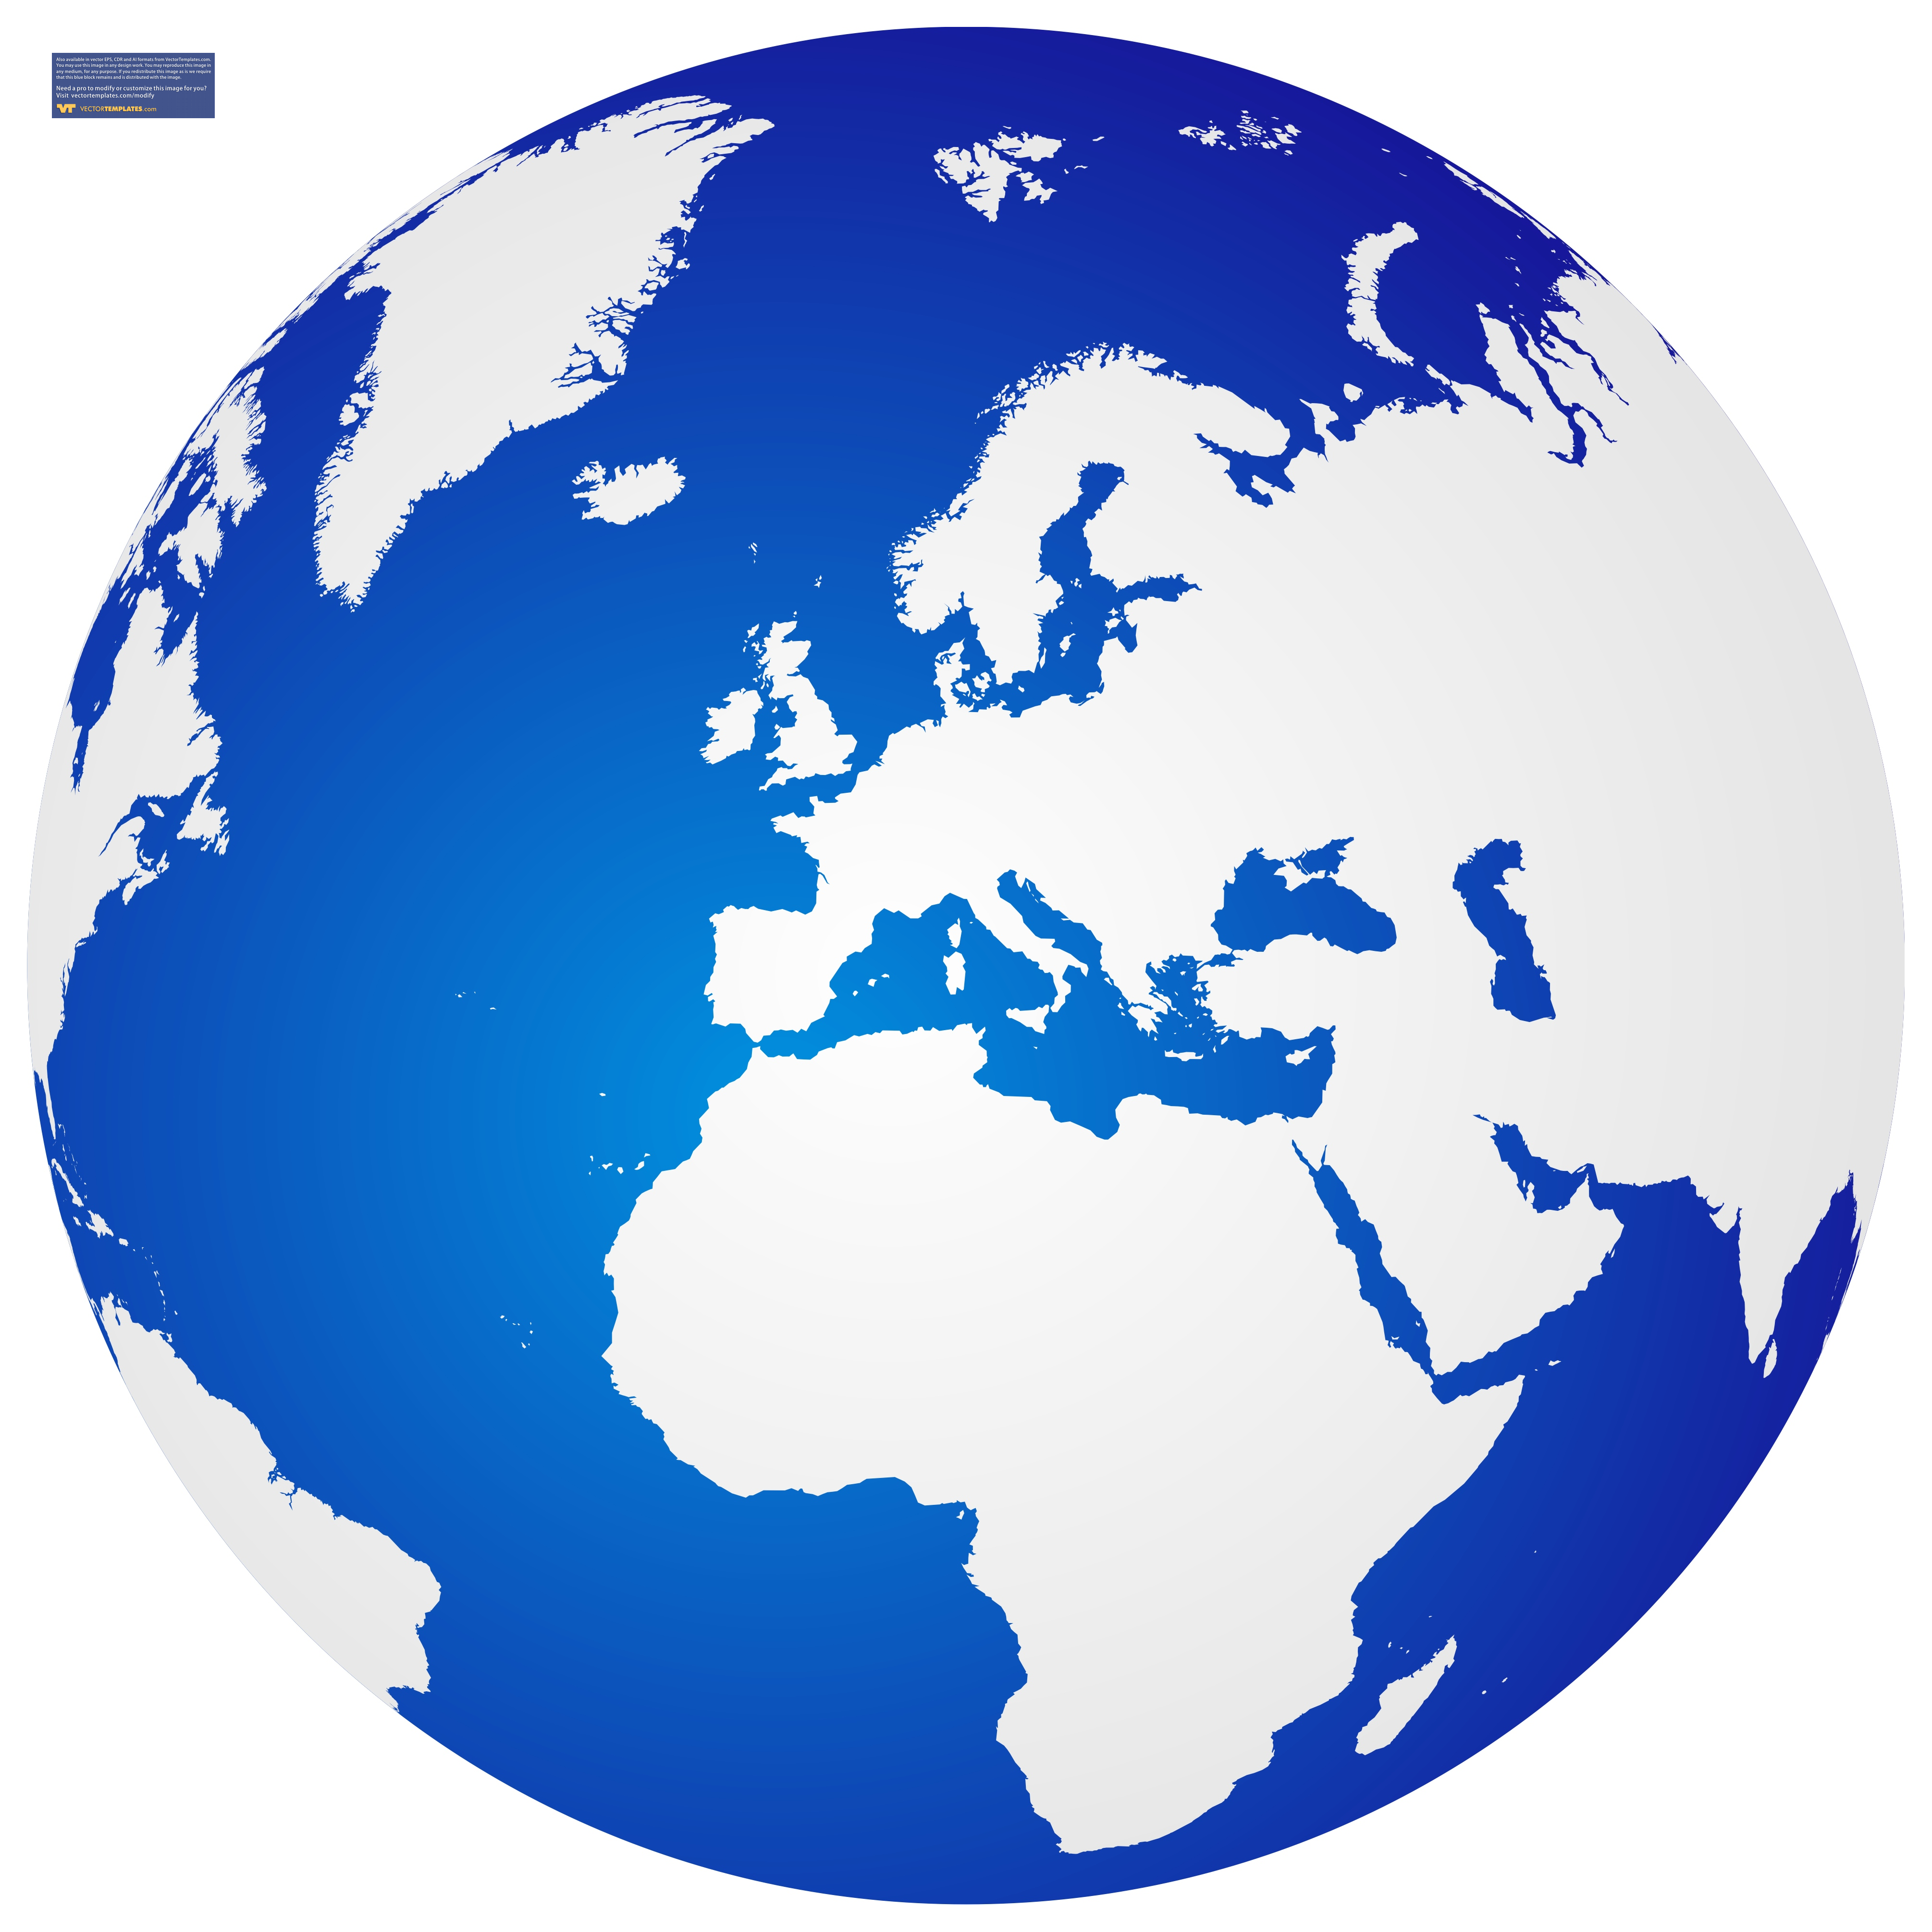 World Globe Vector